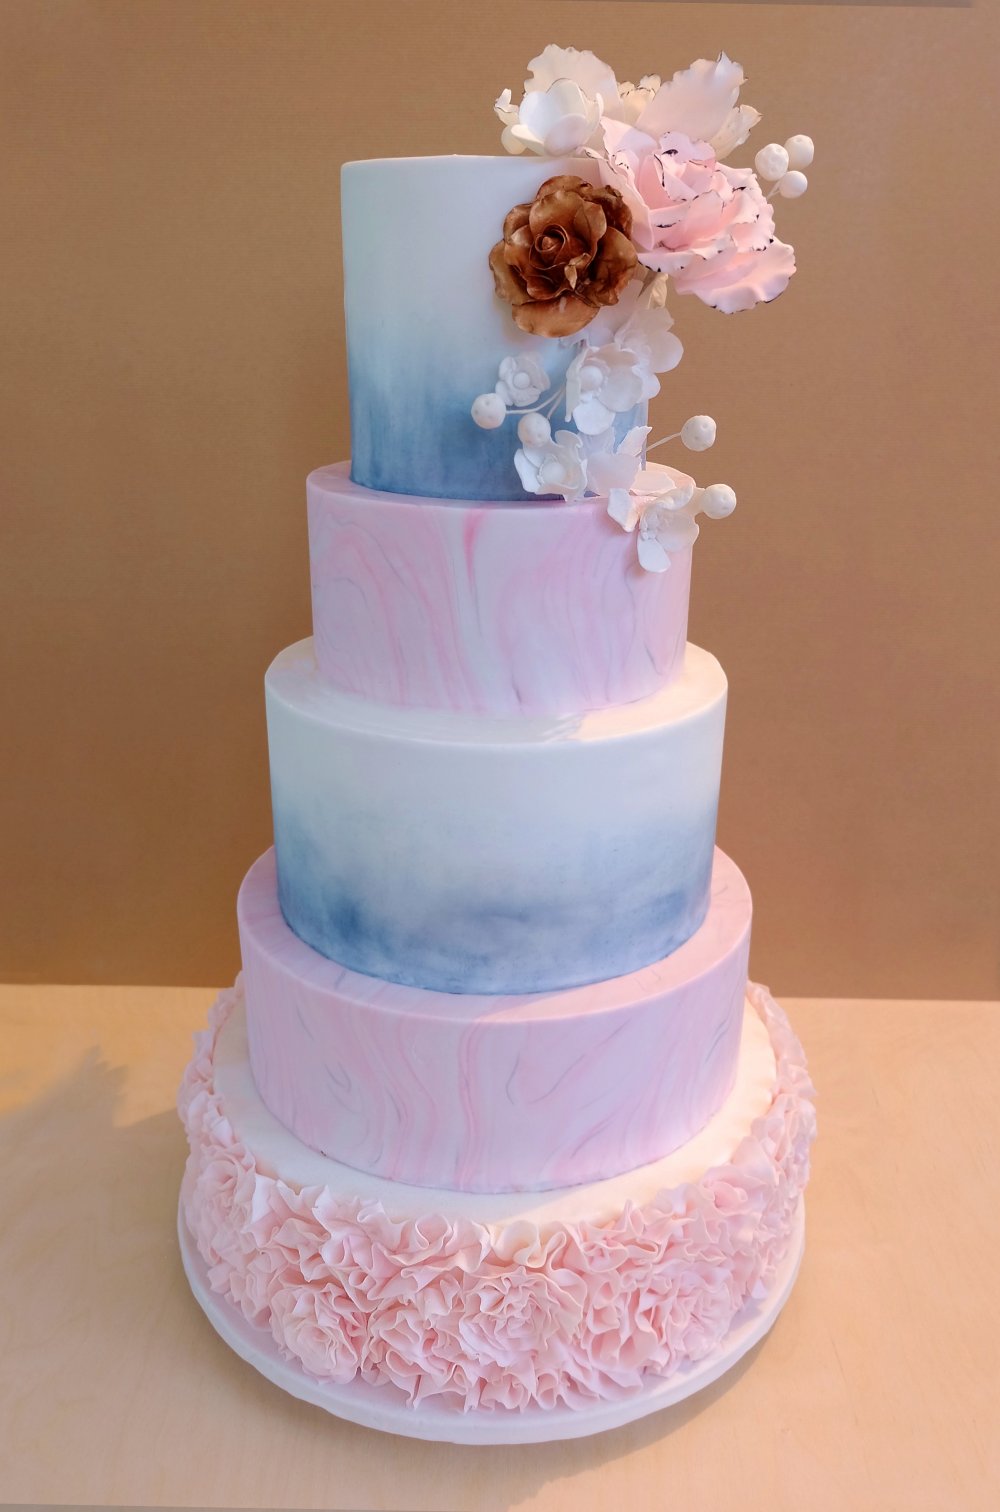 Большой свадебный торт с мраморными розовыми ярусами и белыми ярусами с голубой акварелью. Композиция из сахарных цветов и нижний ярус в тонких сахарных рюшах